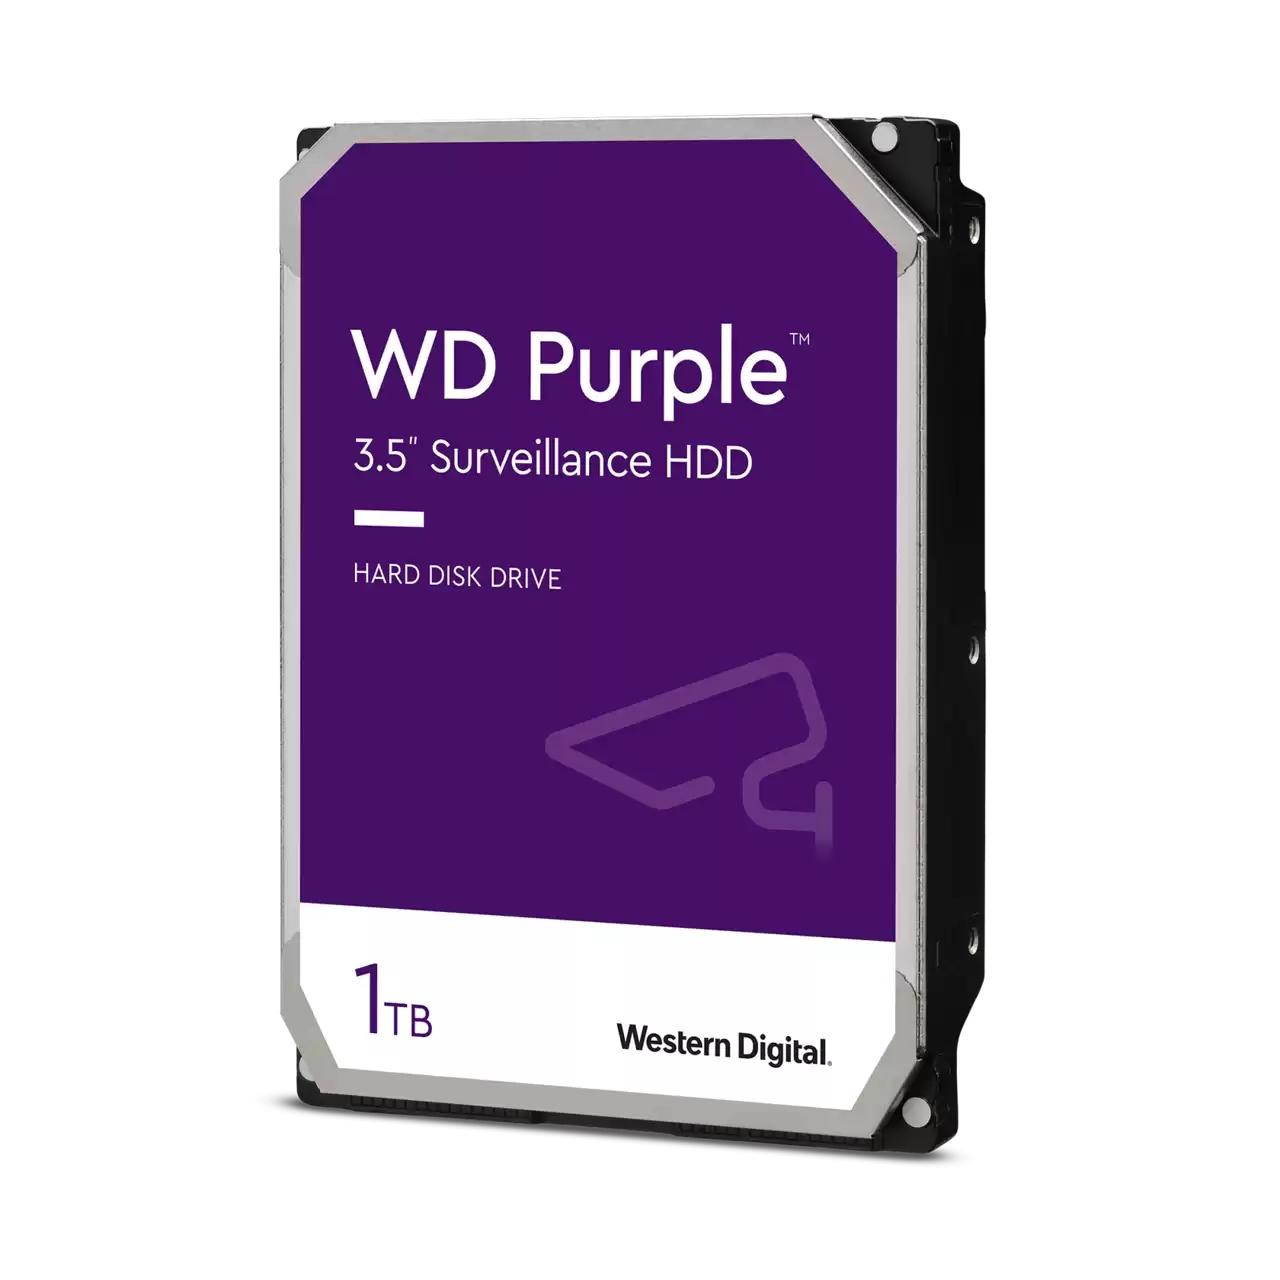 Western Digital WD Purple 1TB SATA Internal Surveillance Hard Drive WD10PURZ